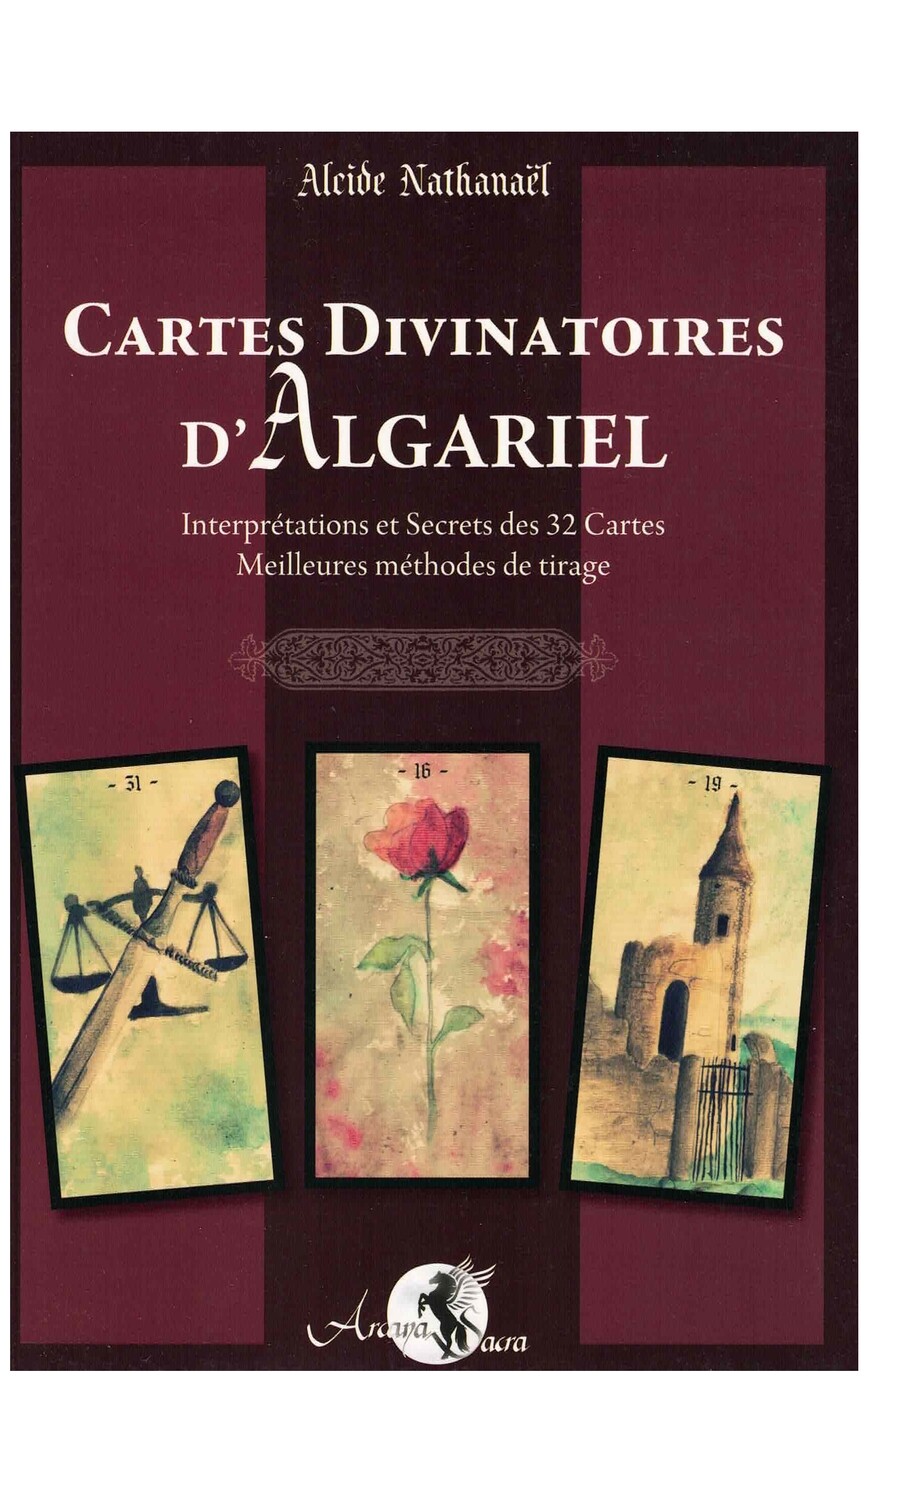 Livre les cartes divinatoires d'Algariel